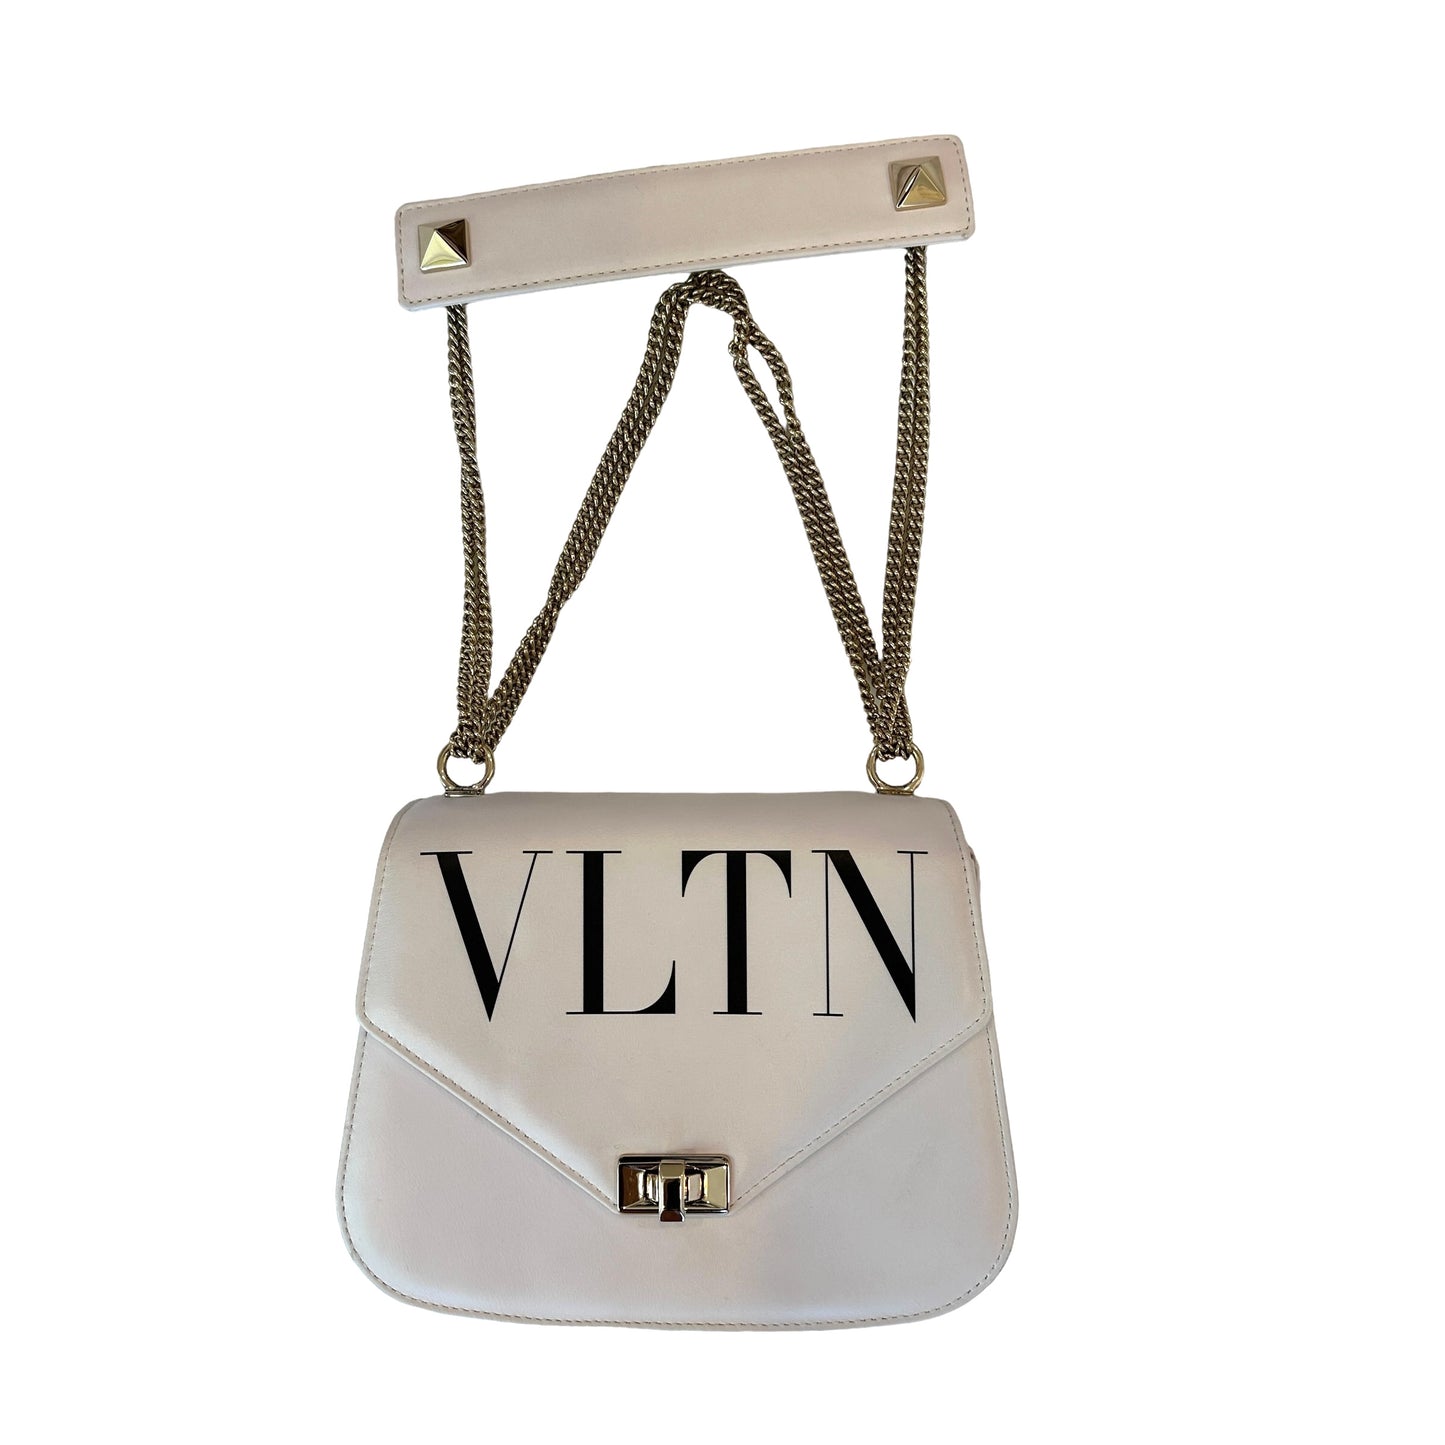 White Leather VLTN Bag